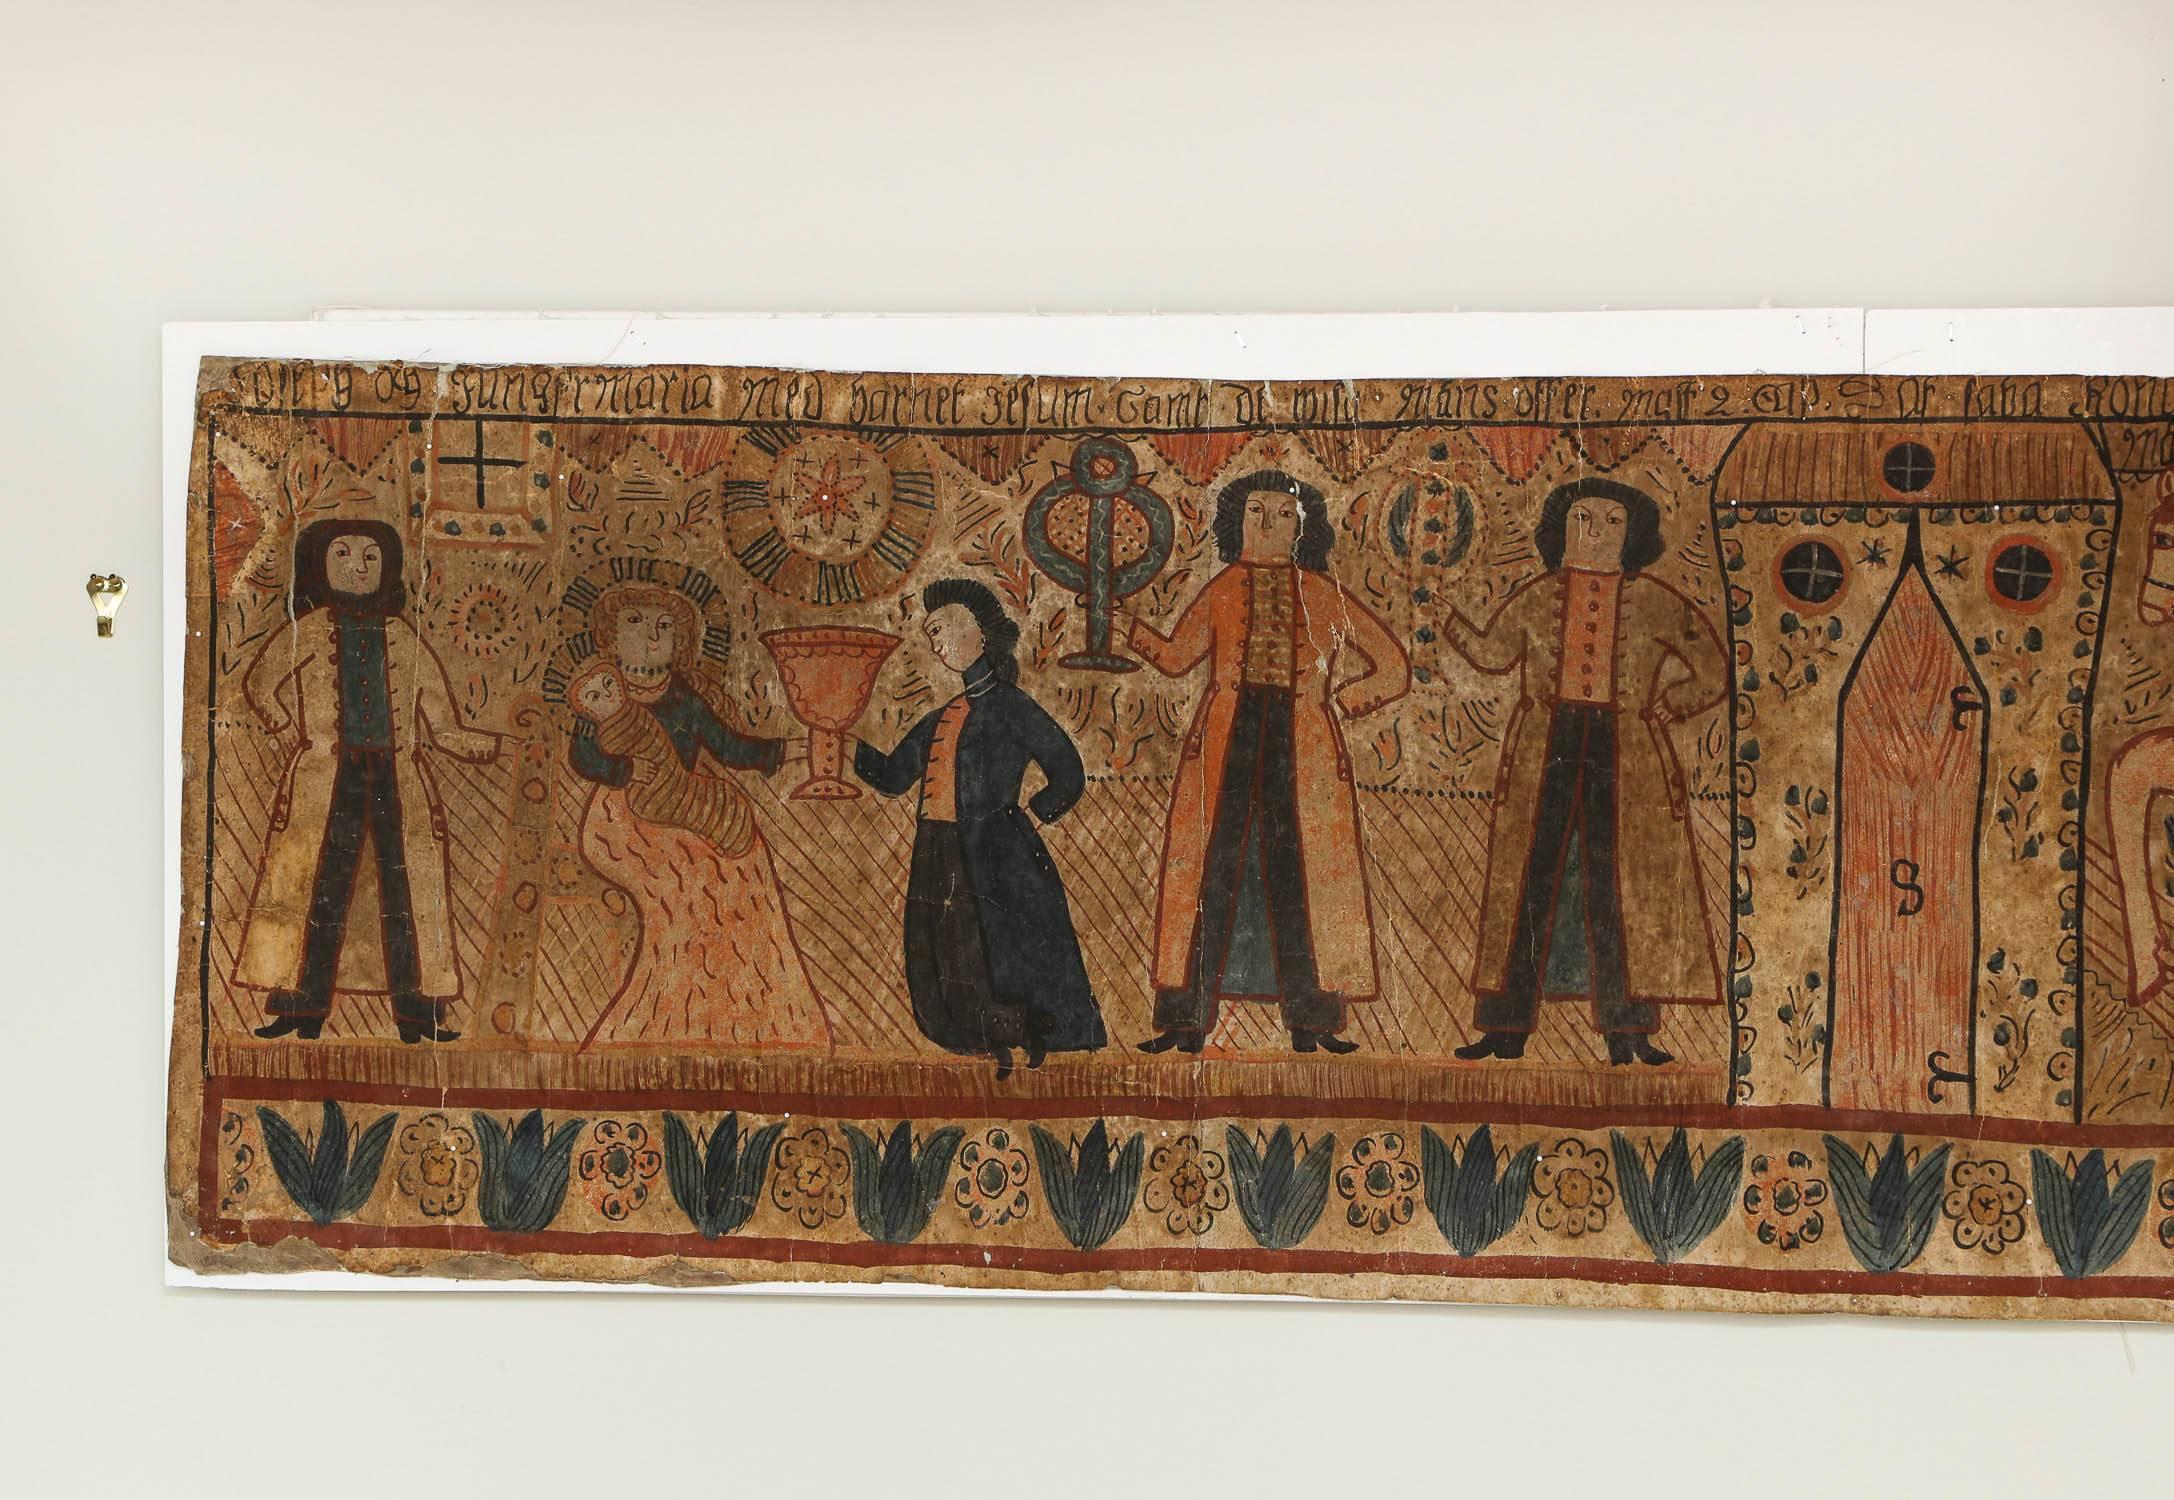 Eine Wandtafel der Volkskunst, handgemalt von einem Wanderkünstler in Schweden im Jahr 1837 (datiert), stellt die Geburt Christi dar, mit den drei Königen zu Pferd, die Maria huldigen, die auf einem Thron sitzt, mit dem Jesuskind in ihren Armen, mit